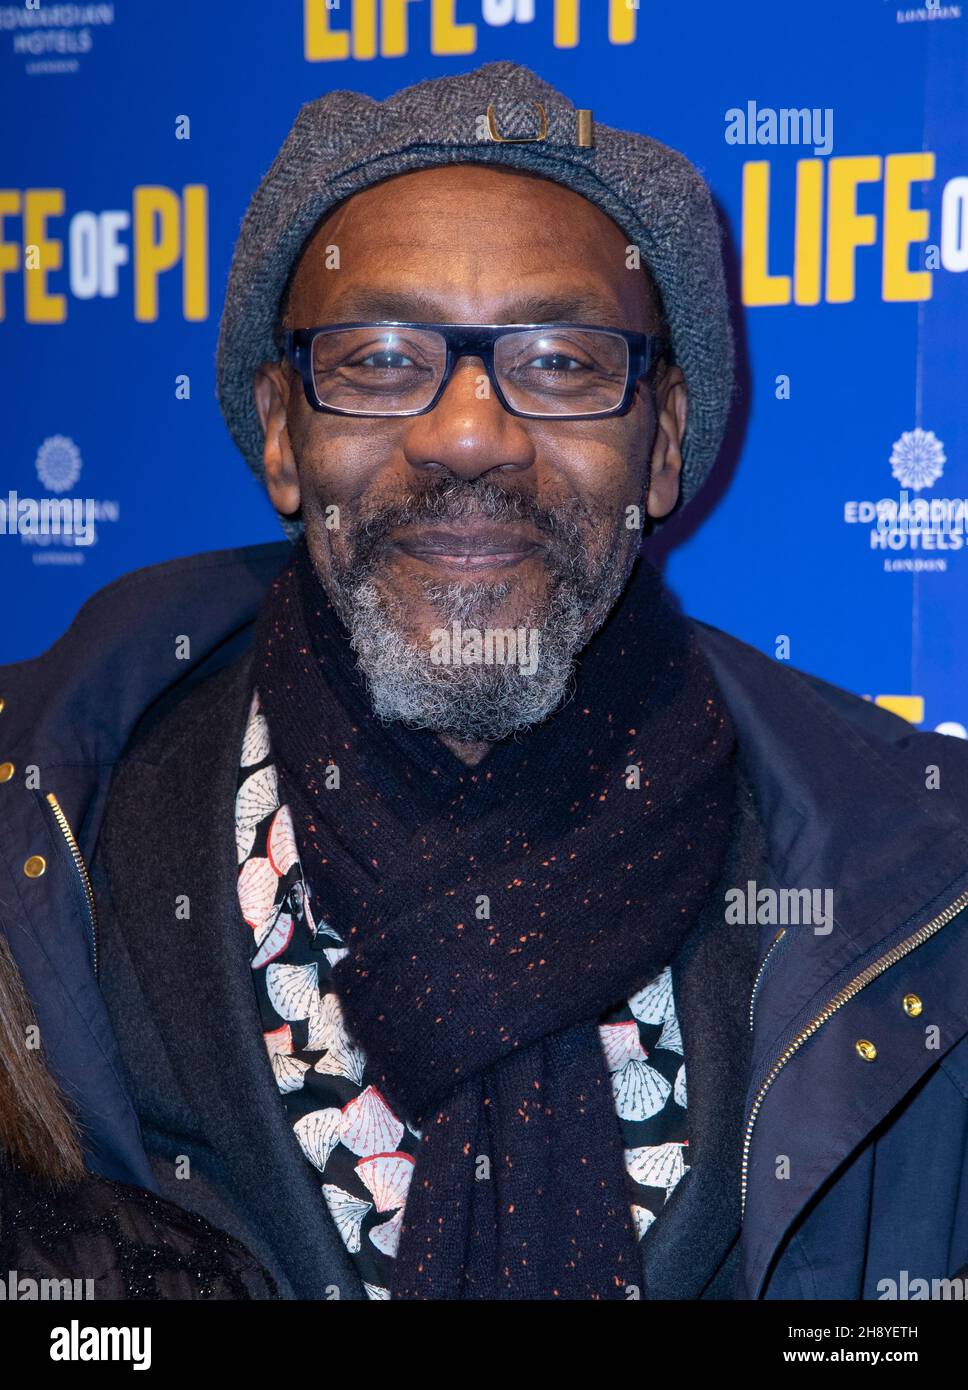 LONDRES - ANGLETERRE DEC 2: Lenny Henry participe à la soirée d'ouverture 'Life of Pi' au Wyndham Theatre, Londres, Angleterre le 2 décembre 2021.Photo de Gary Mitchell/Alay Live News Banque D'Images